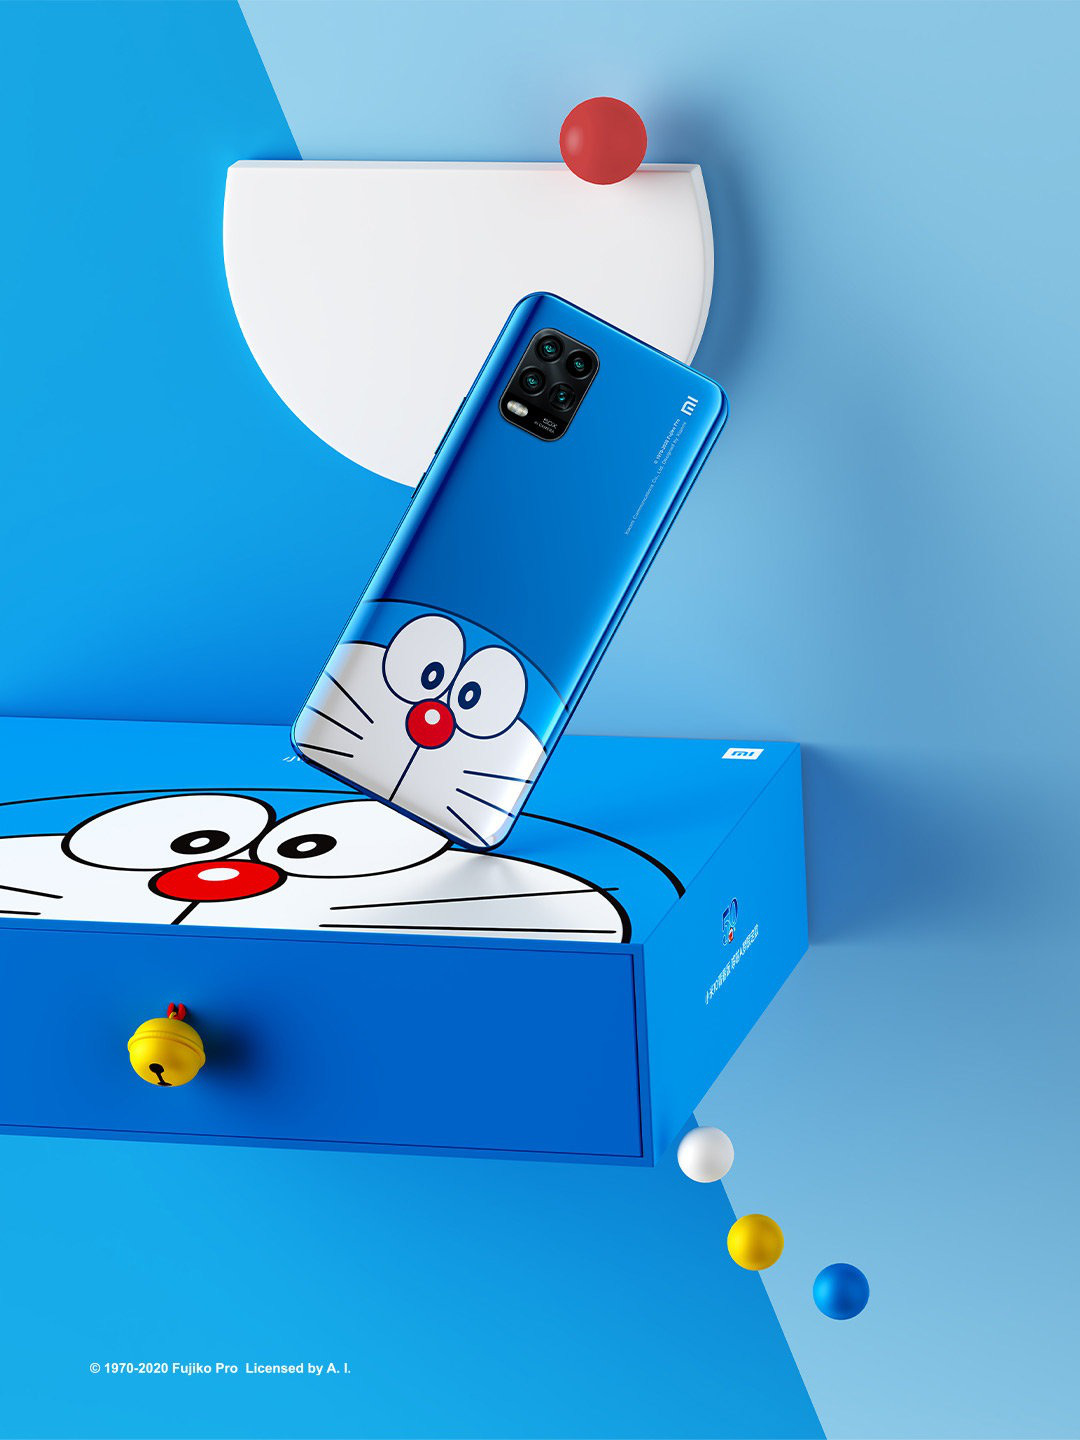 Thật tuyệt vời khi có một chiếc điện thoại mang hình ảnh chú mèo máy Doraemon yêu thương. Sản phẩm này không chỉ vui mắt mà còn hỗ trợ tối đa các tính năng của một chiếc điện thoại thông minh. Hãy xem qua hình ảnh liên quan để cùng khám phá tất cả các tính năng đặc biệt của chiếc điện thoại Doraemon.